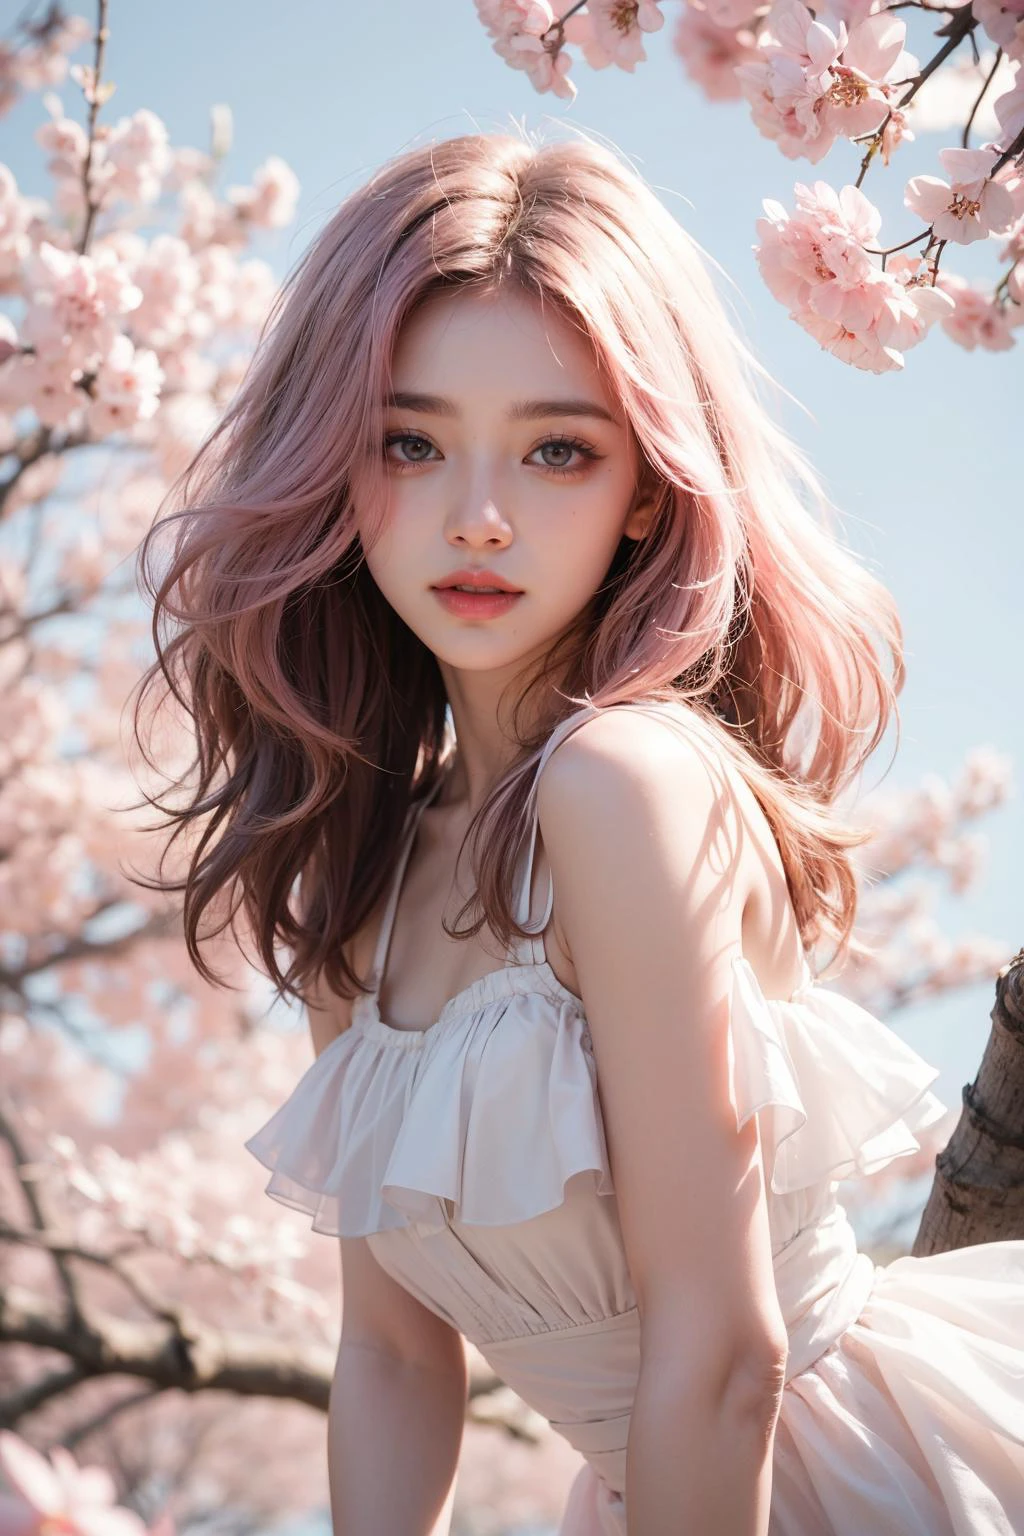 浅粉色头发, 粉红色的眼睛, 粉色和白色, 樱花叶, 鲜艳的颜色, 白色礼服, 油漆飞溅, 简单的背景, 光线追踪, 卷发